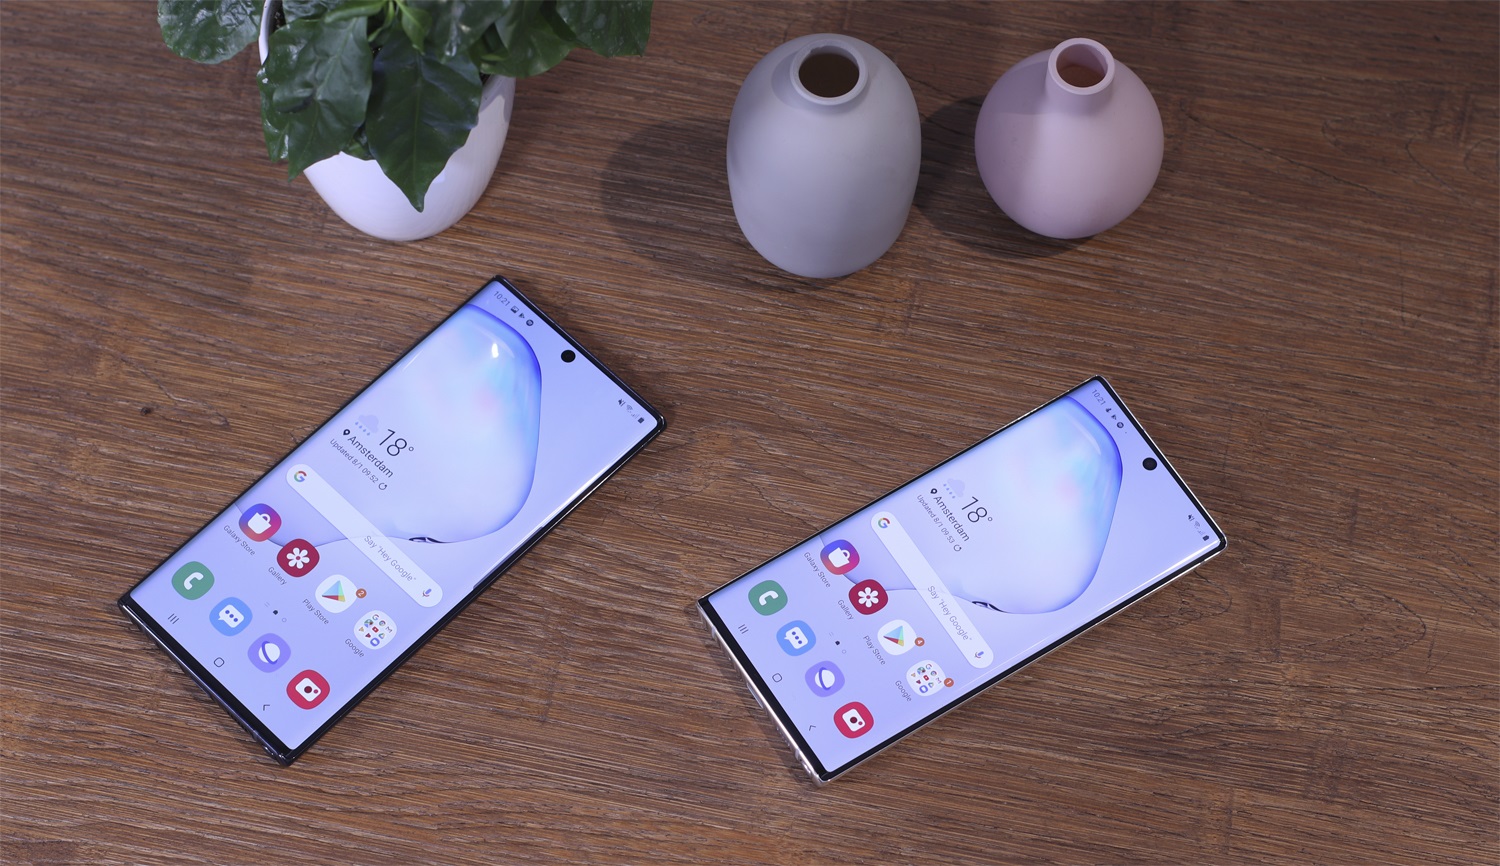 29 Samsung-Smartphones haben eine neue Version von One UI 3.1 erhalten – vollständige Liste veröffentlicht